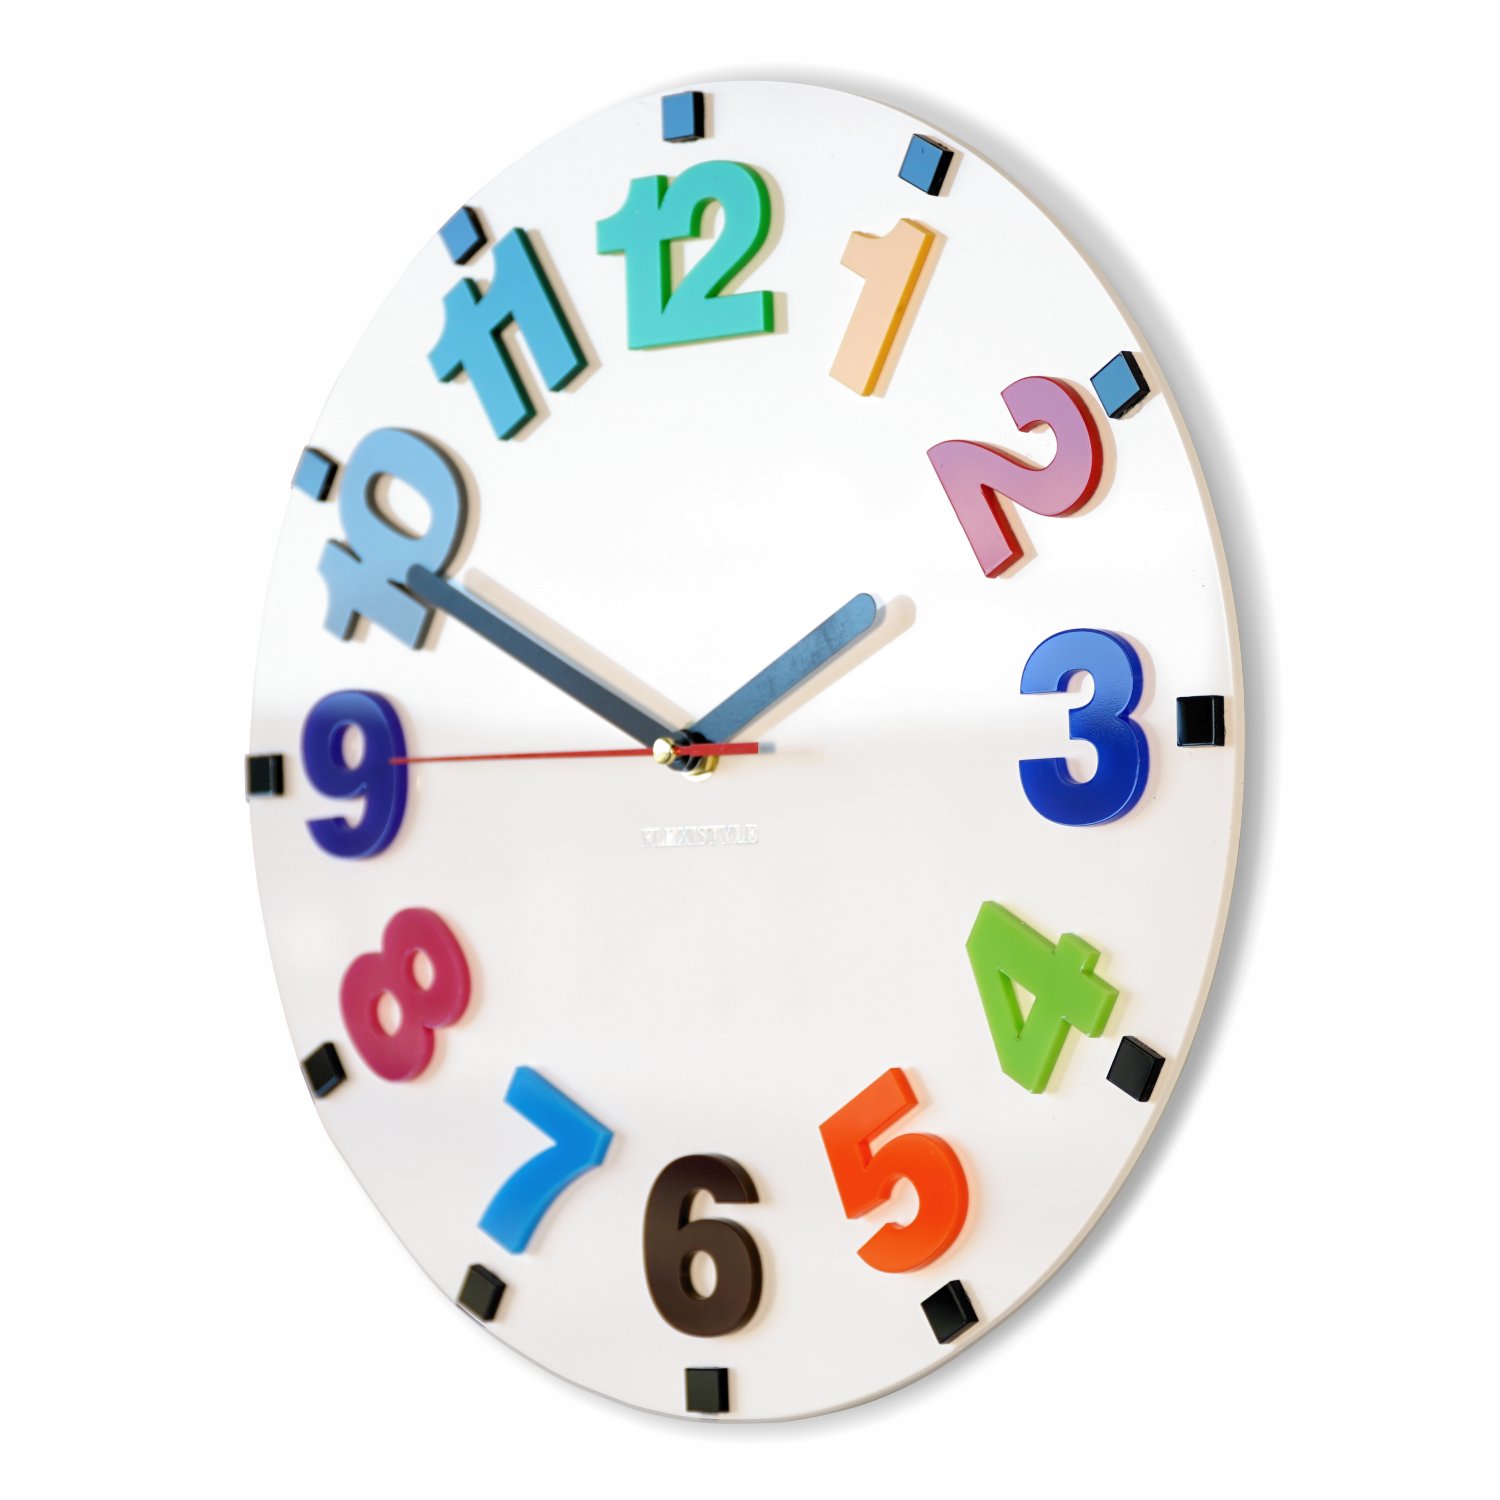 Детский час сайт. Часы настенные для детей. Часы с цифрами. Часы настенные с разноцветными цифрами. Часы настенные со стрелками и цифрами.